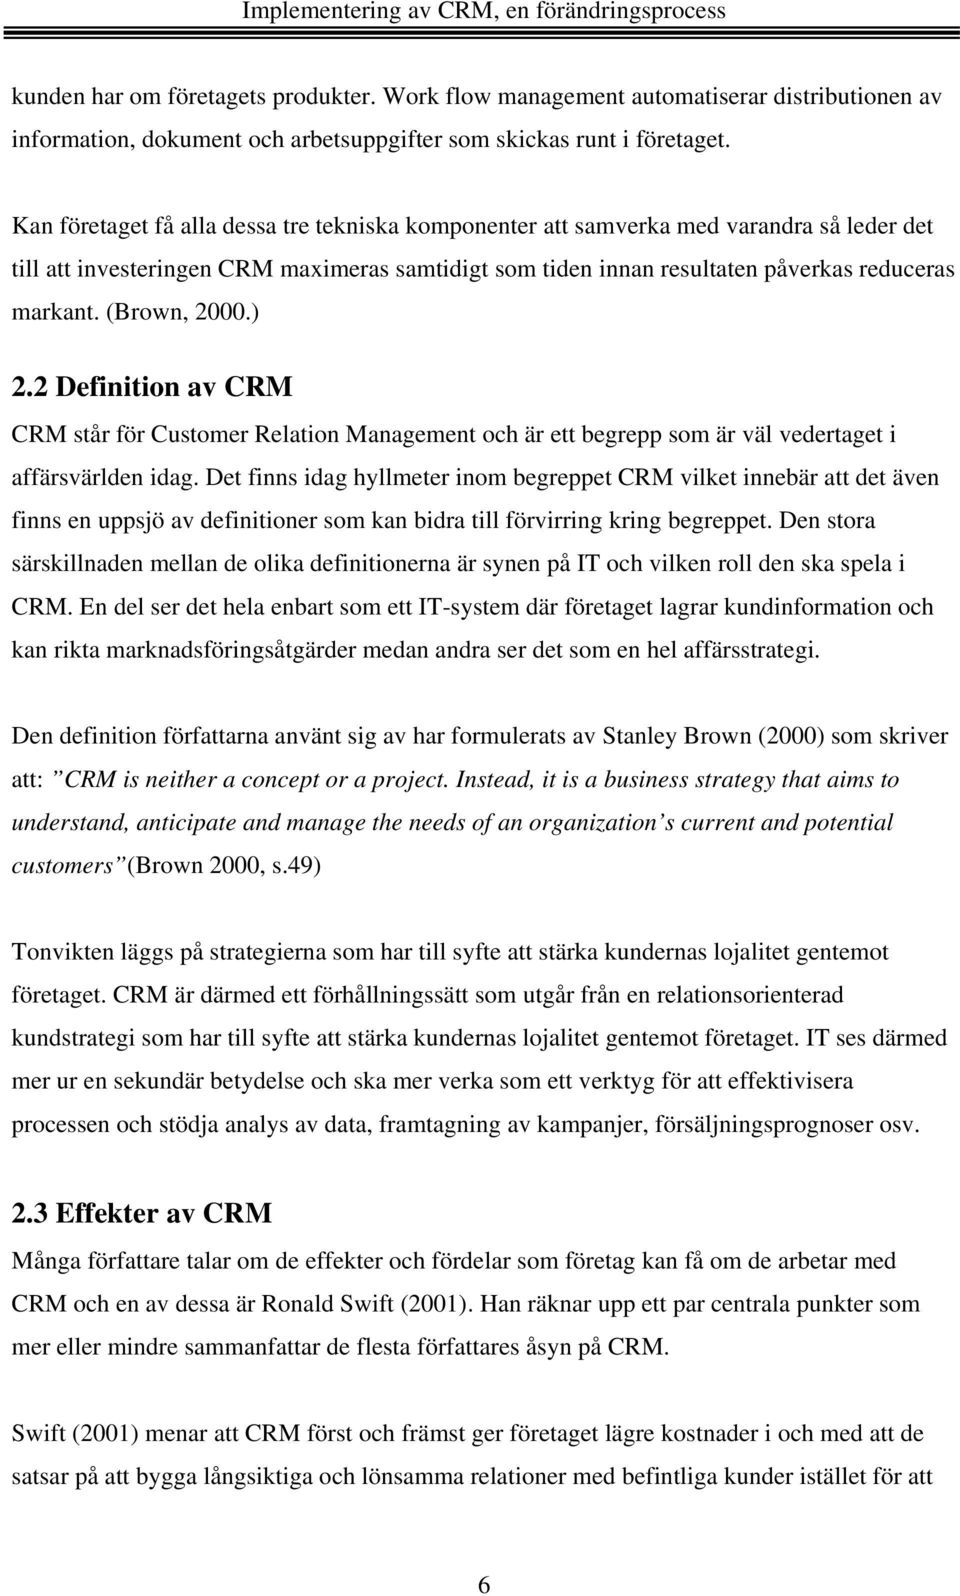 (Brown, 2000.) 2.2 Definition av CRM CRM står för Customer Relation Management och är ett begrepp som är väl vedertaget i affärsvärlden idag.